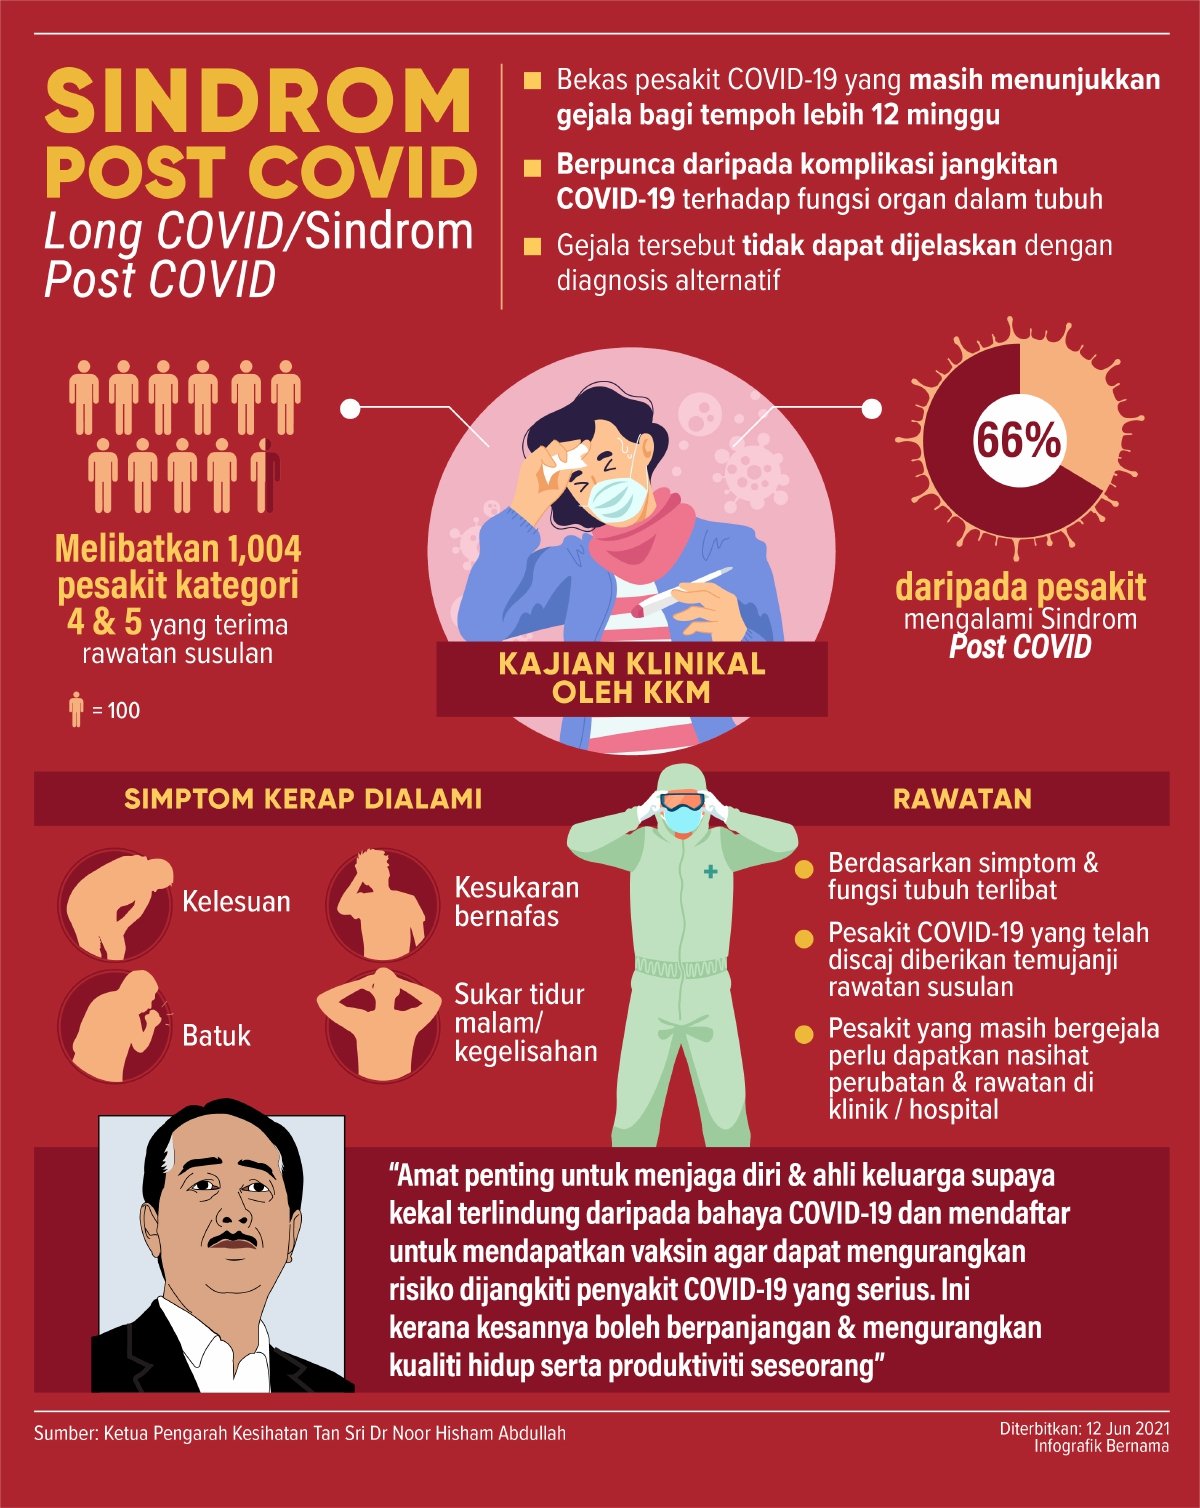 Covid-19 hari mengikut awal simptom Coronavirus: Simptom,